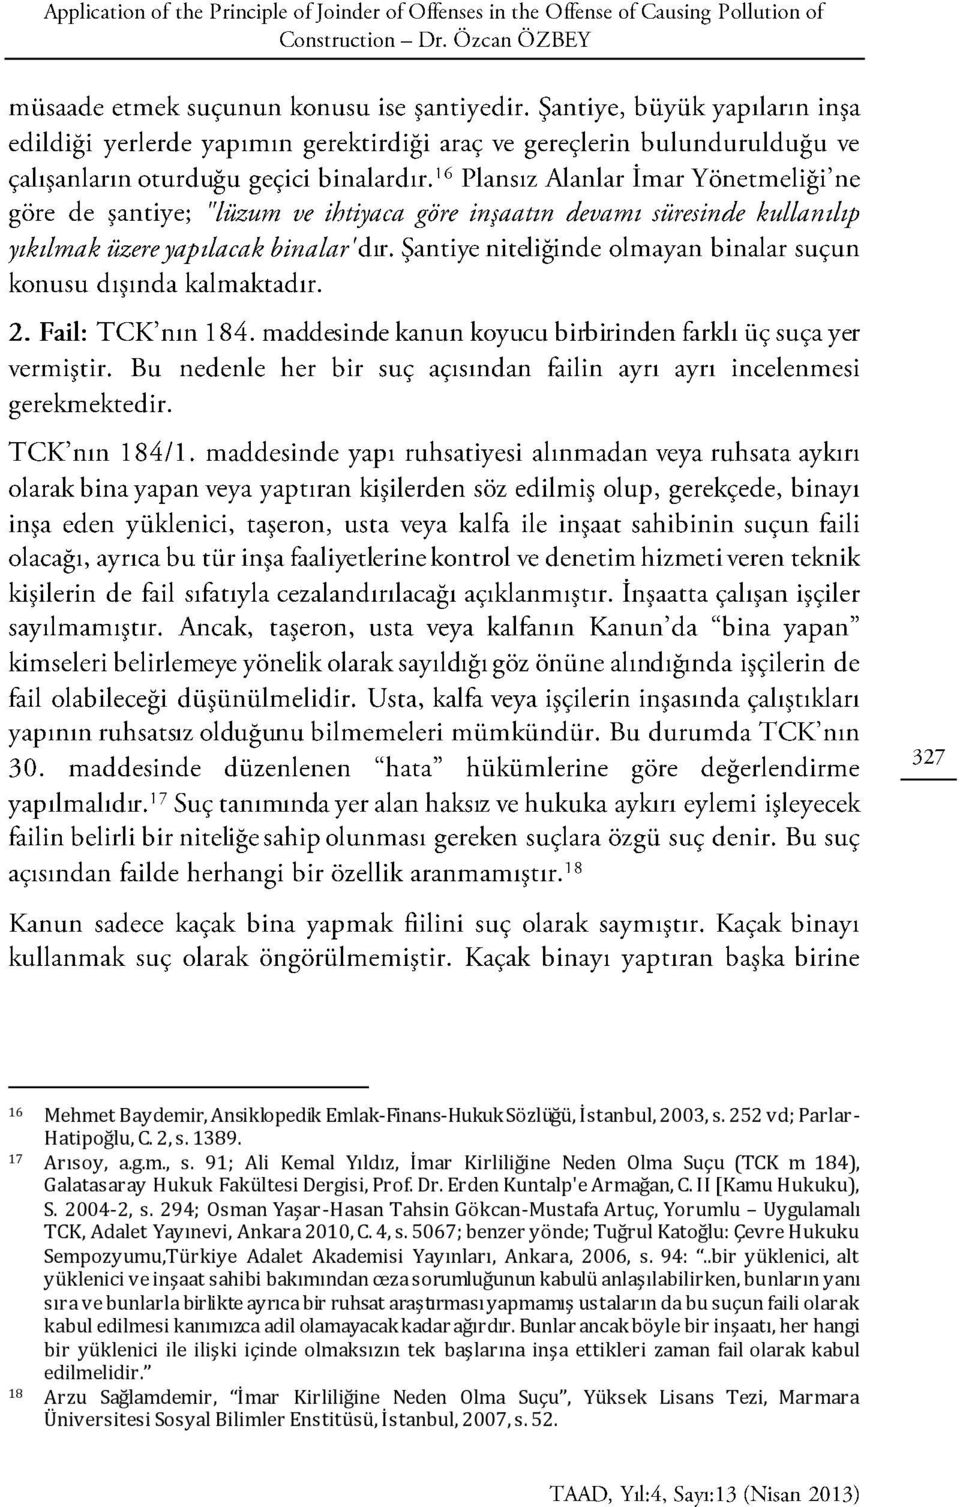 5067; benzer yönde; Tuğrul Katoğlu: Çevre Hukuku Sempozyumu,Türkiye Adalet Akademisi Yayınları, Ankara, 2006, s. 94:.